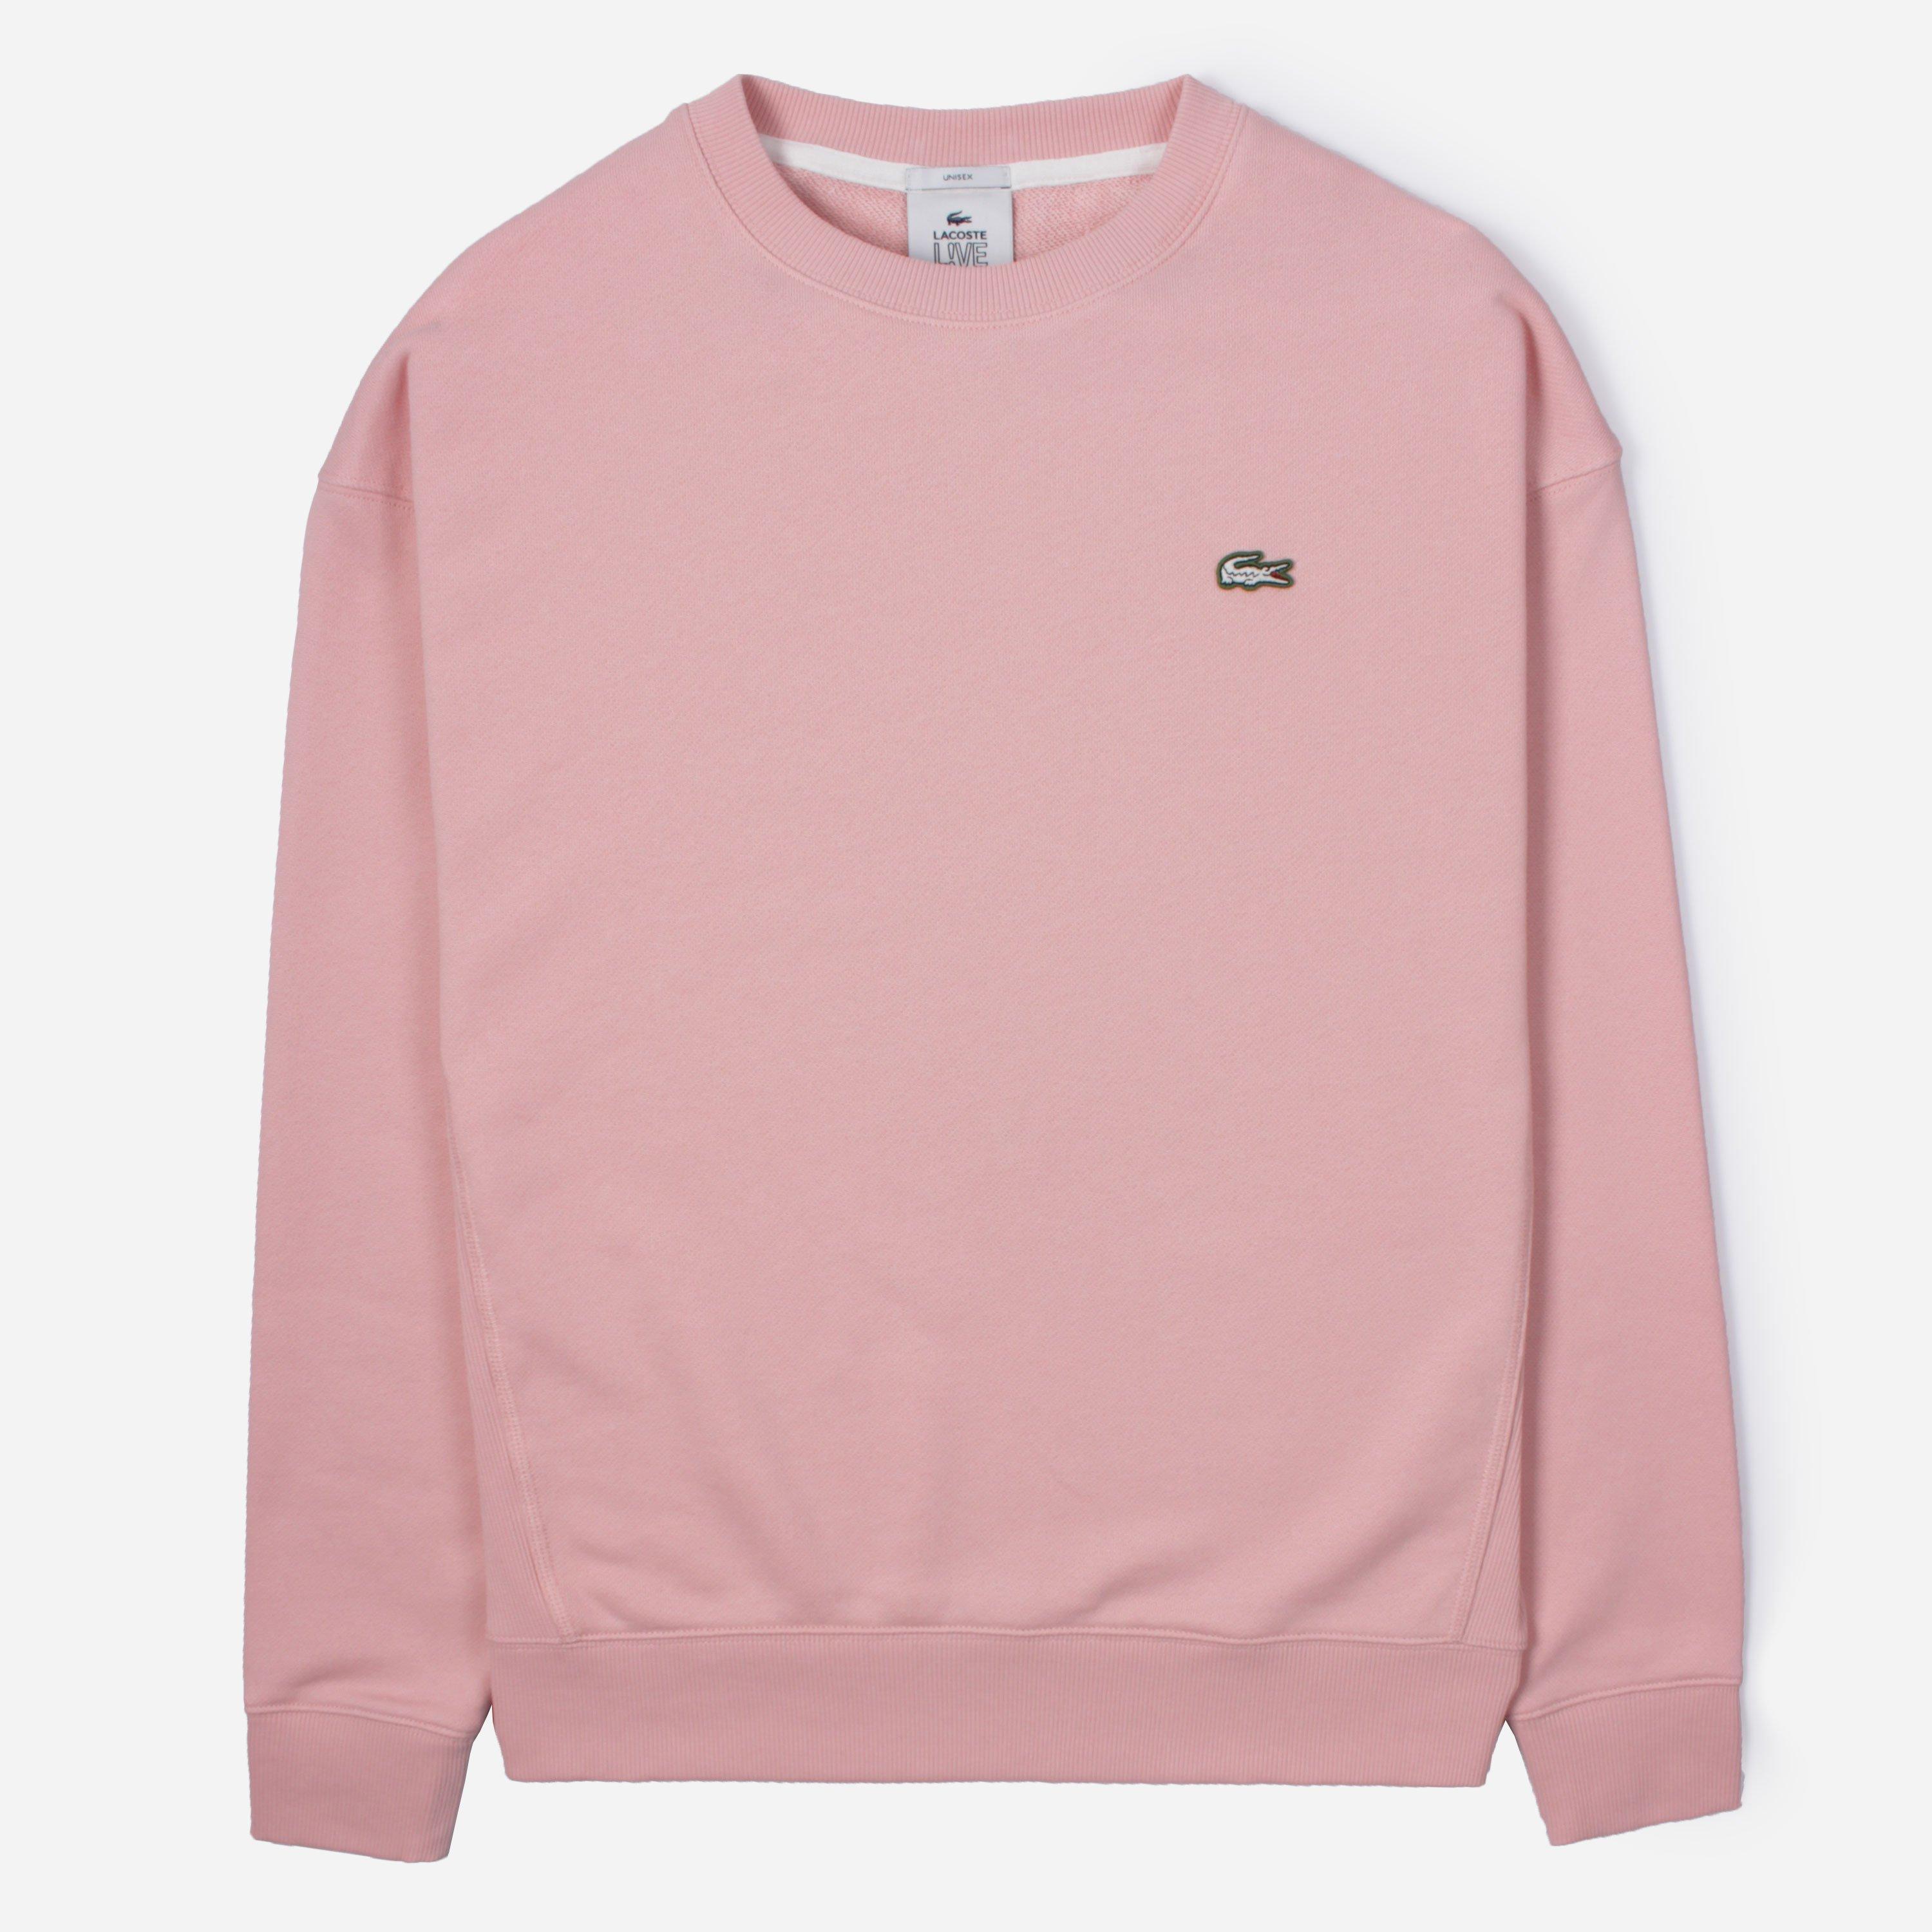 Lacoste Live Logo Sweatshirt in Pink for Men - Lyst